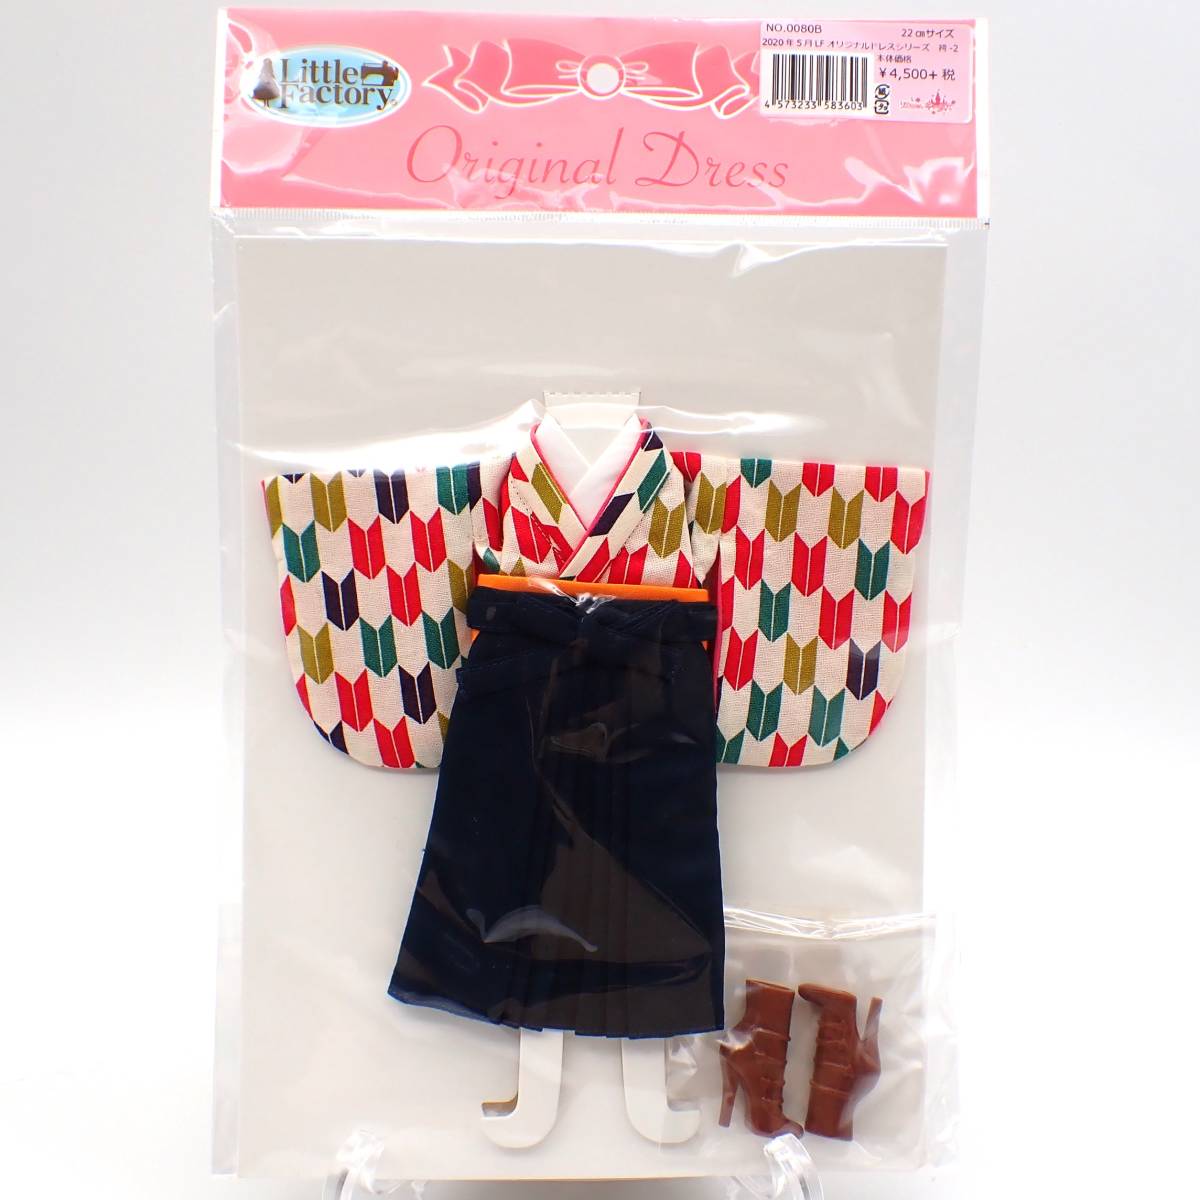 リカちゃん お人形用 ドレス オリジナルドレス 袴 22cmサイズ 新品 LICCA CASTLE リカちゃんキャッスル R1599